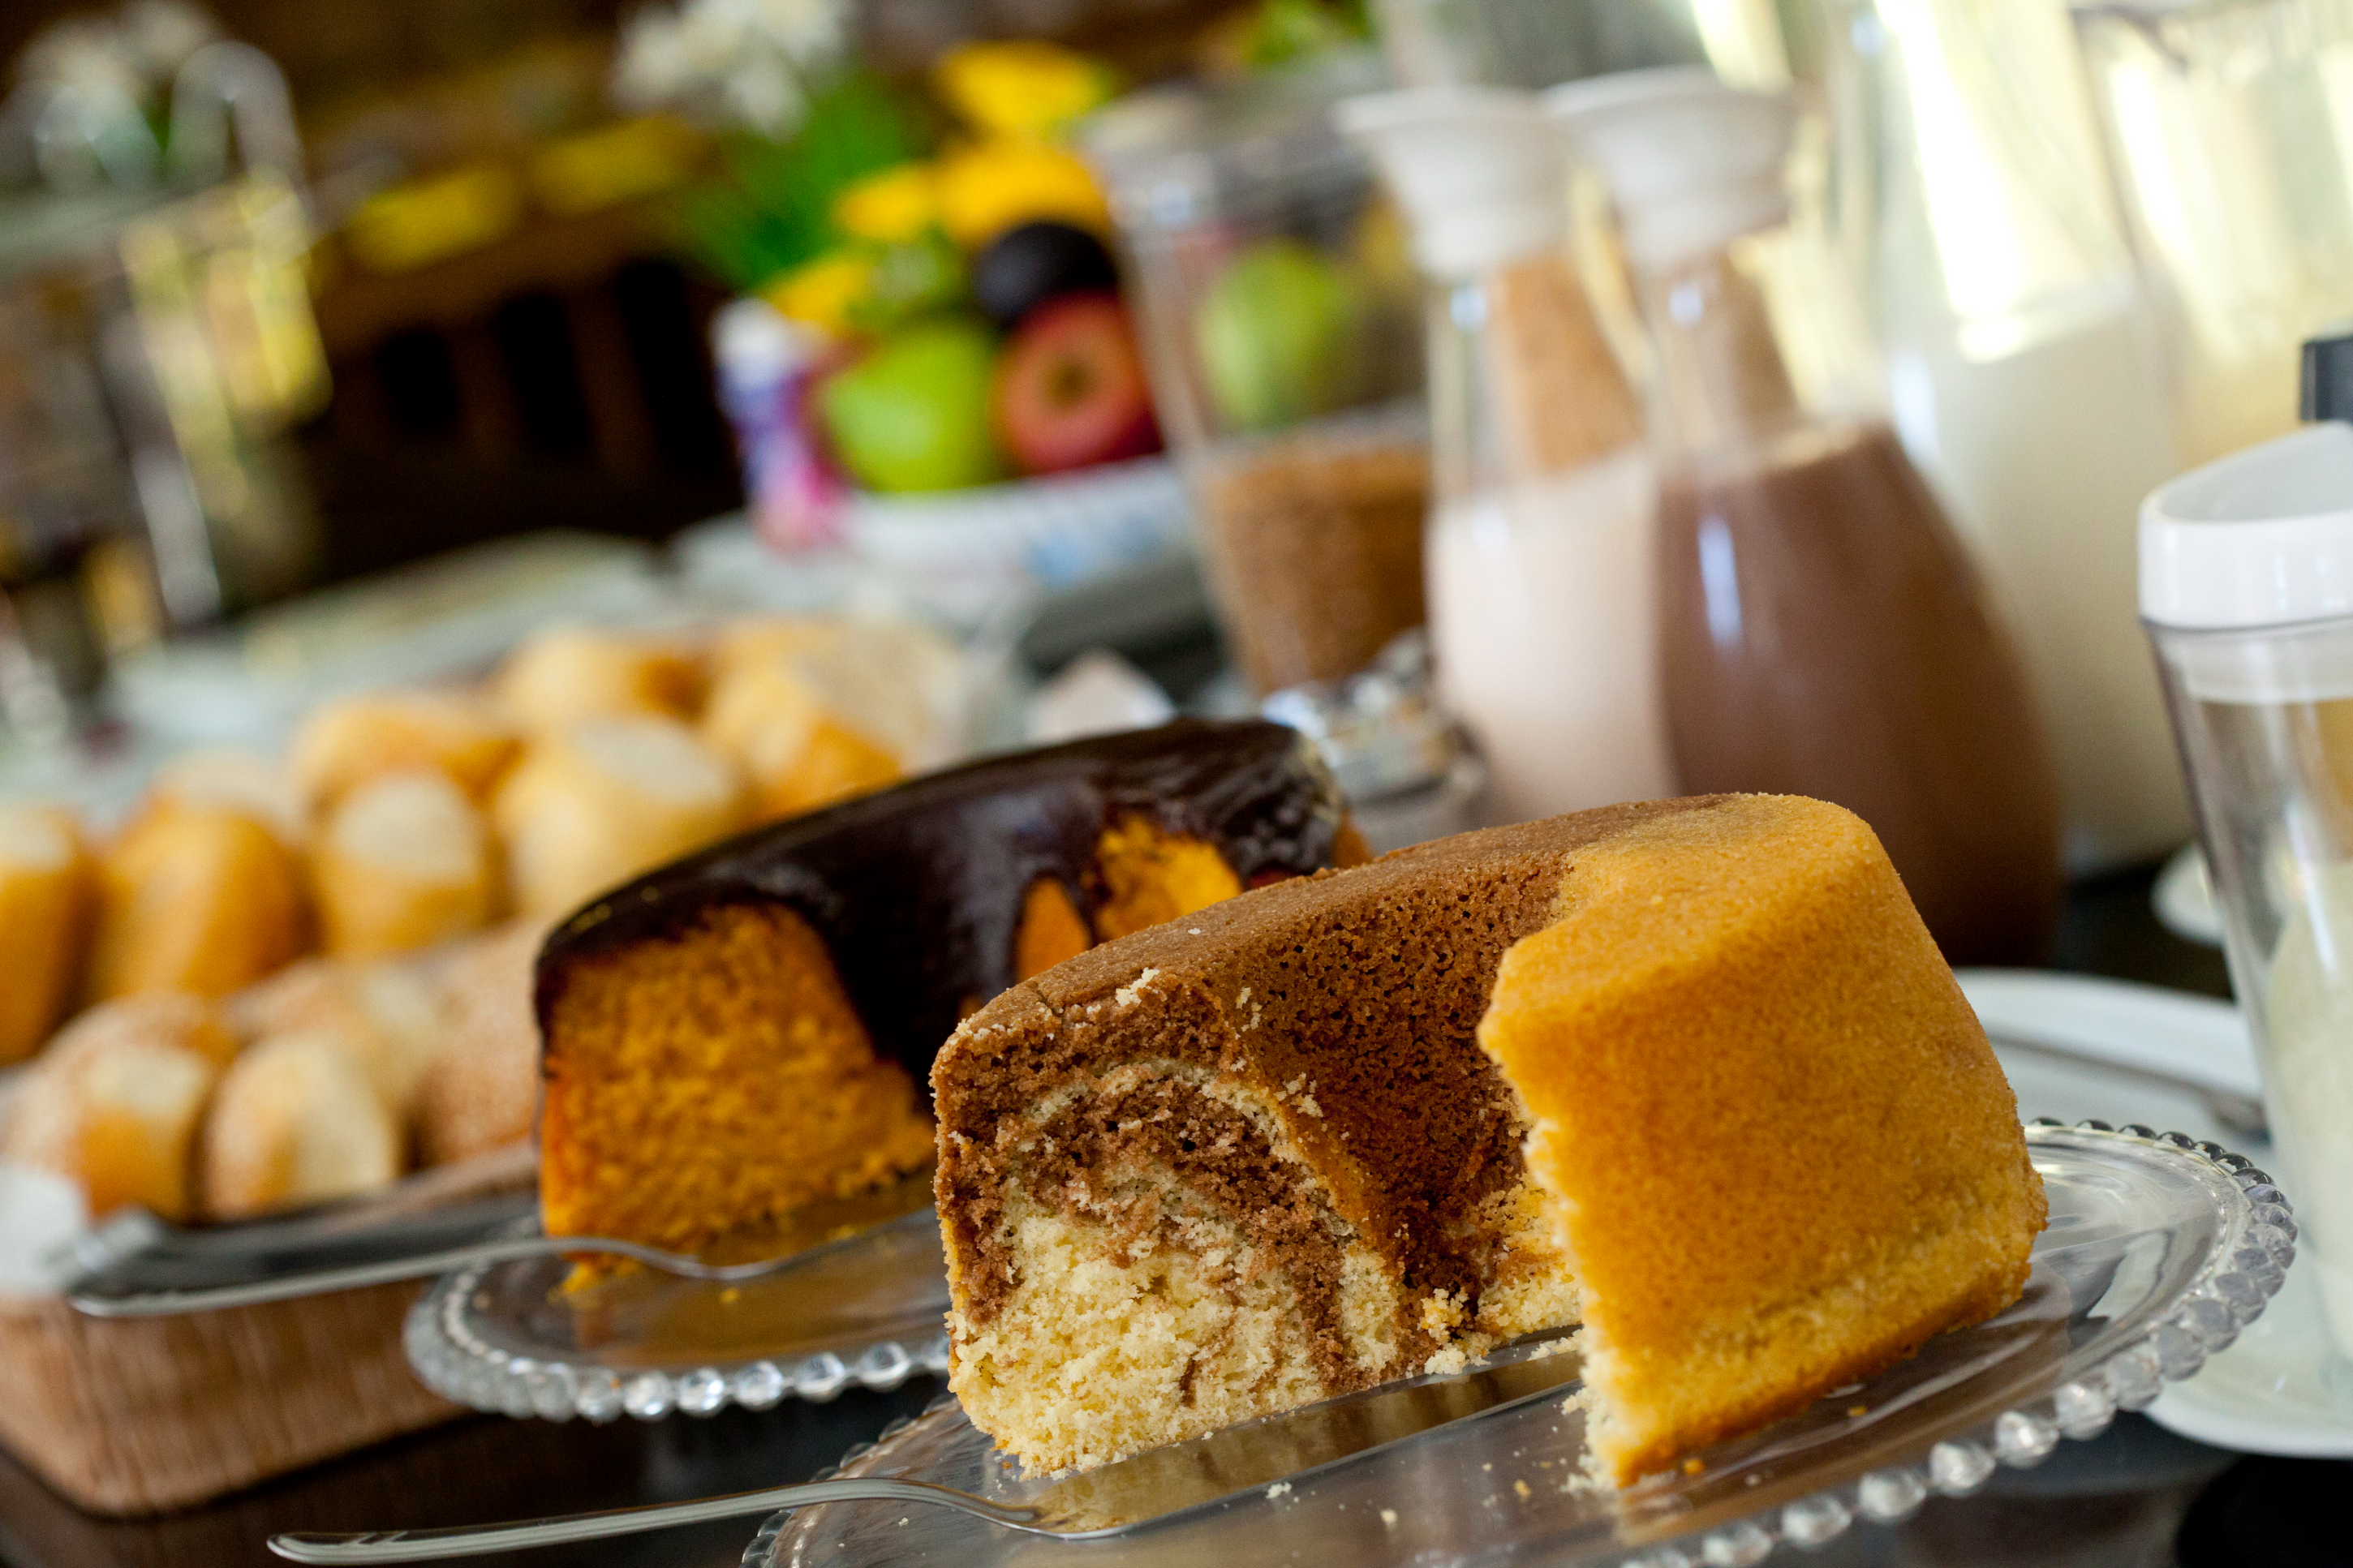 Cafés em Aracaju, Delicatessen em Aracaju, Bolo, Big Bolo, Bolos em Aracaju, lugar perfeito, fotos de Aracaju, fotos de Sergipe, tortas em Aracaju, salgados em Aracaju